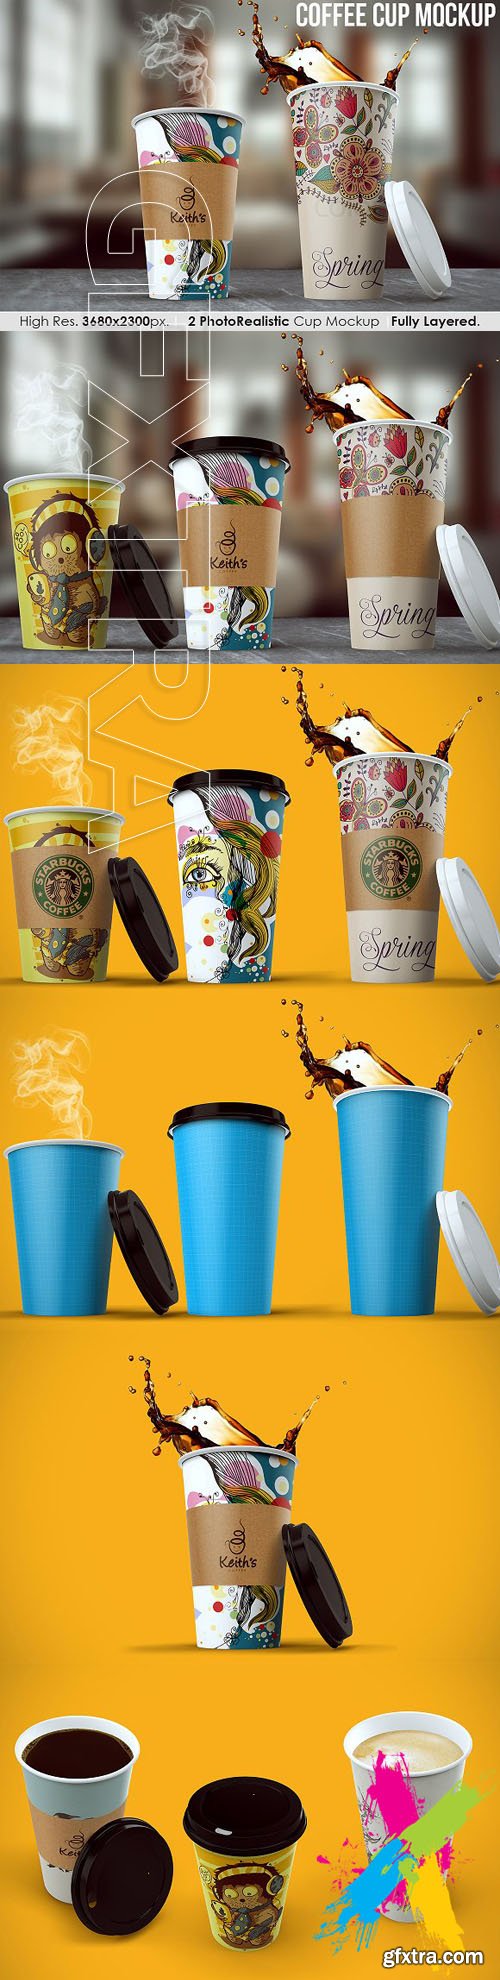 CM - Coffee Cup Mockup 1632648